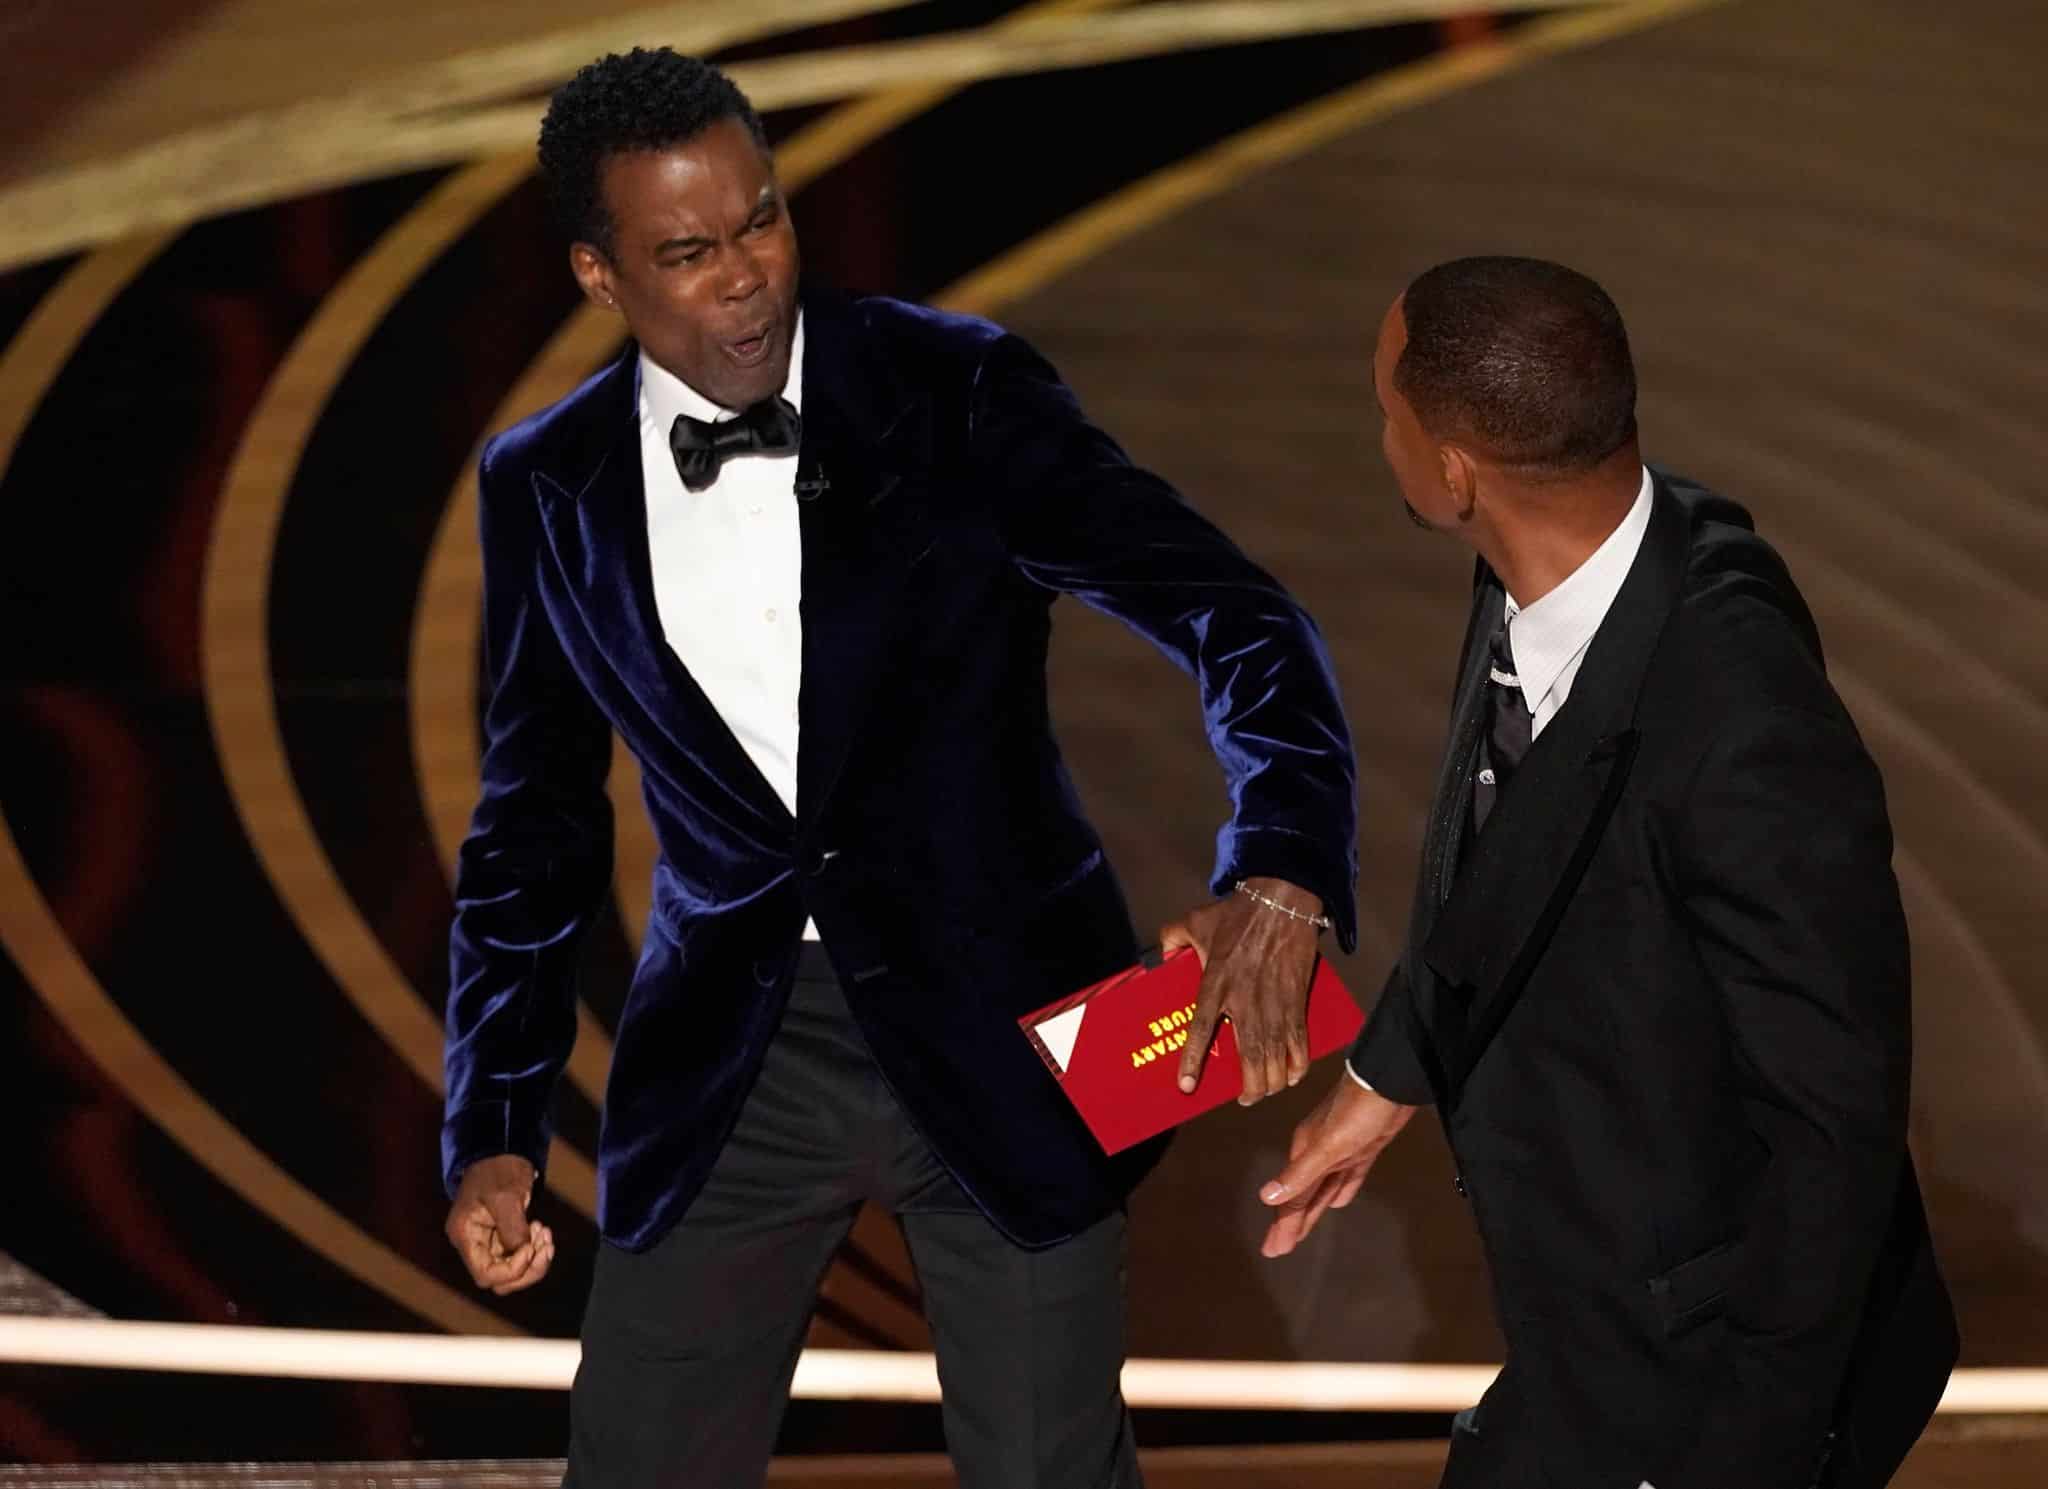 Mit Video: Will Smith ohrfeigt Chris Rock auf Oscar-Bühne